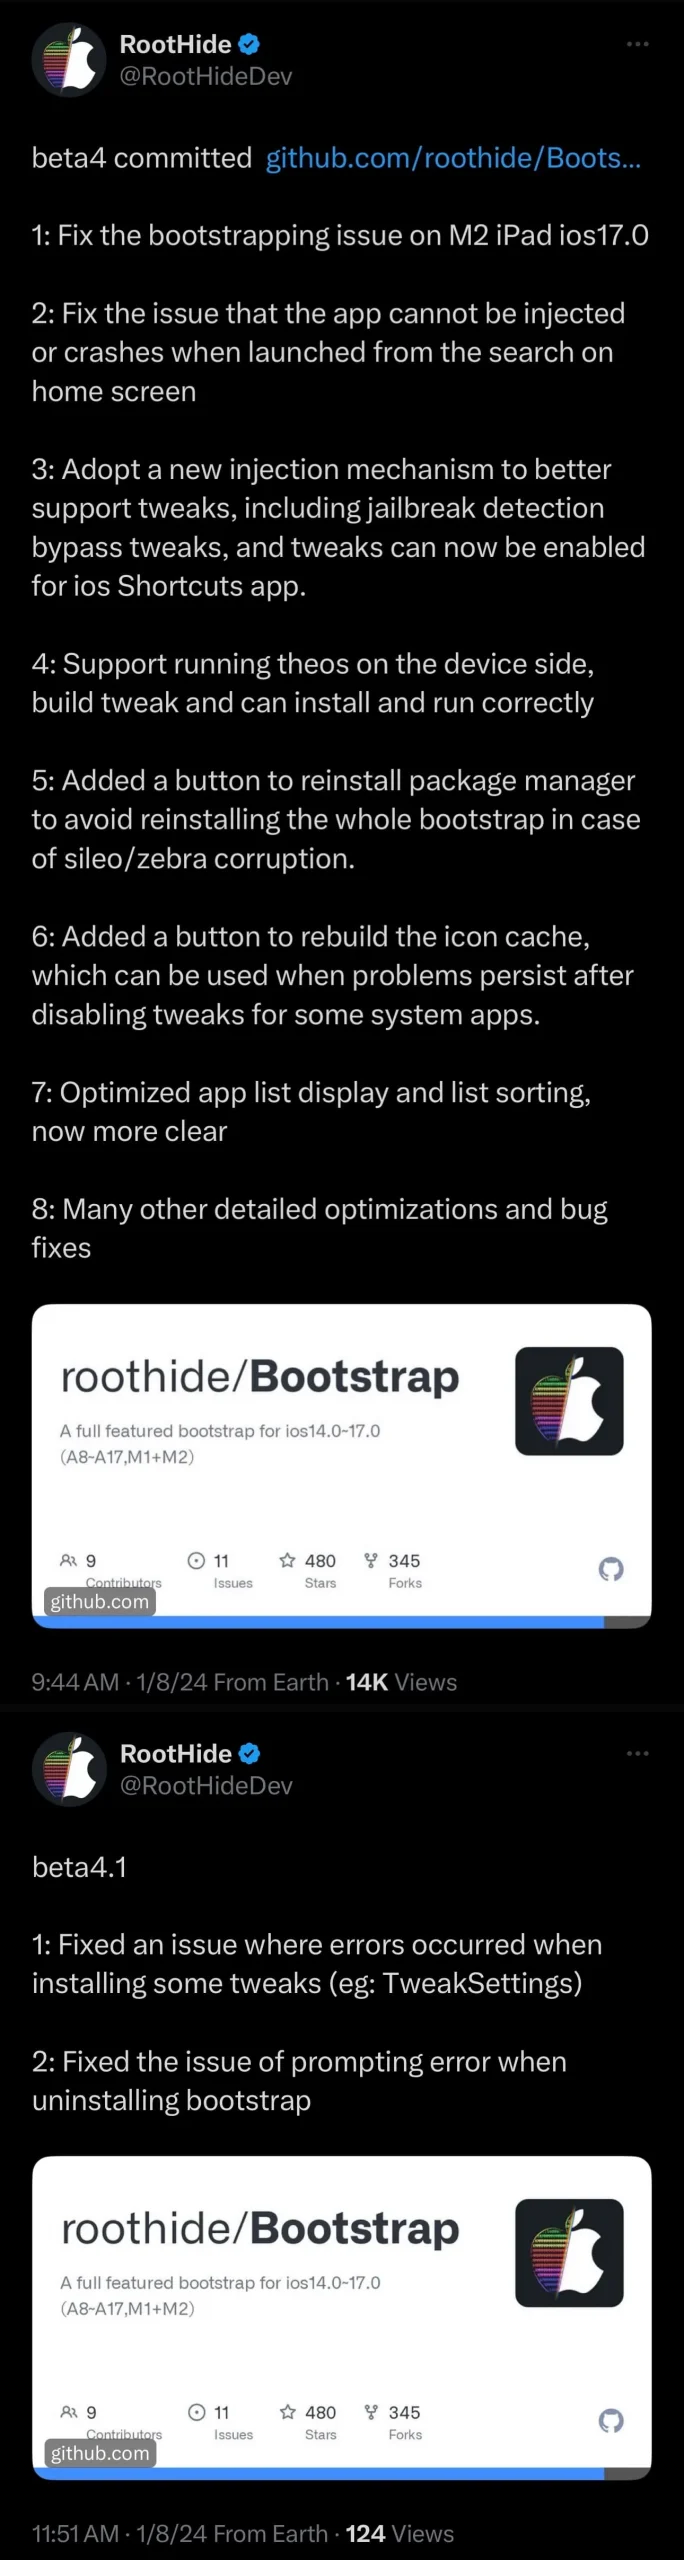 Le bootstrap RootHide mis à jour vers la v4.1.